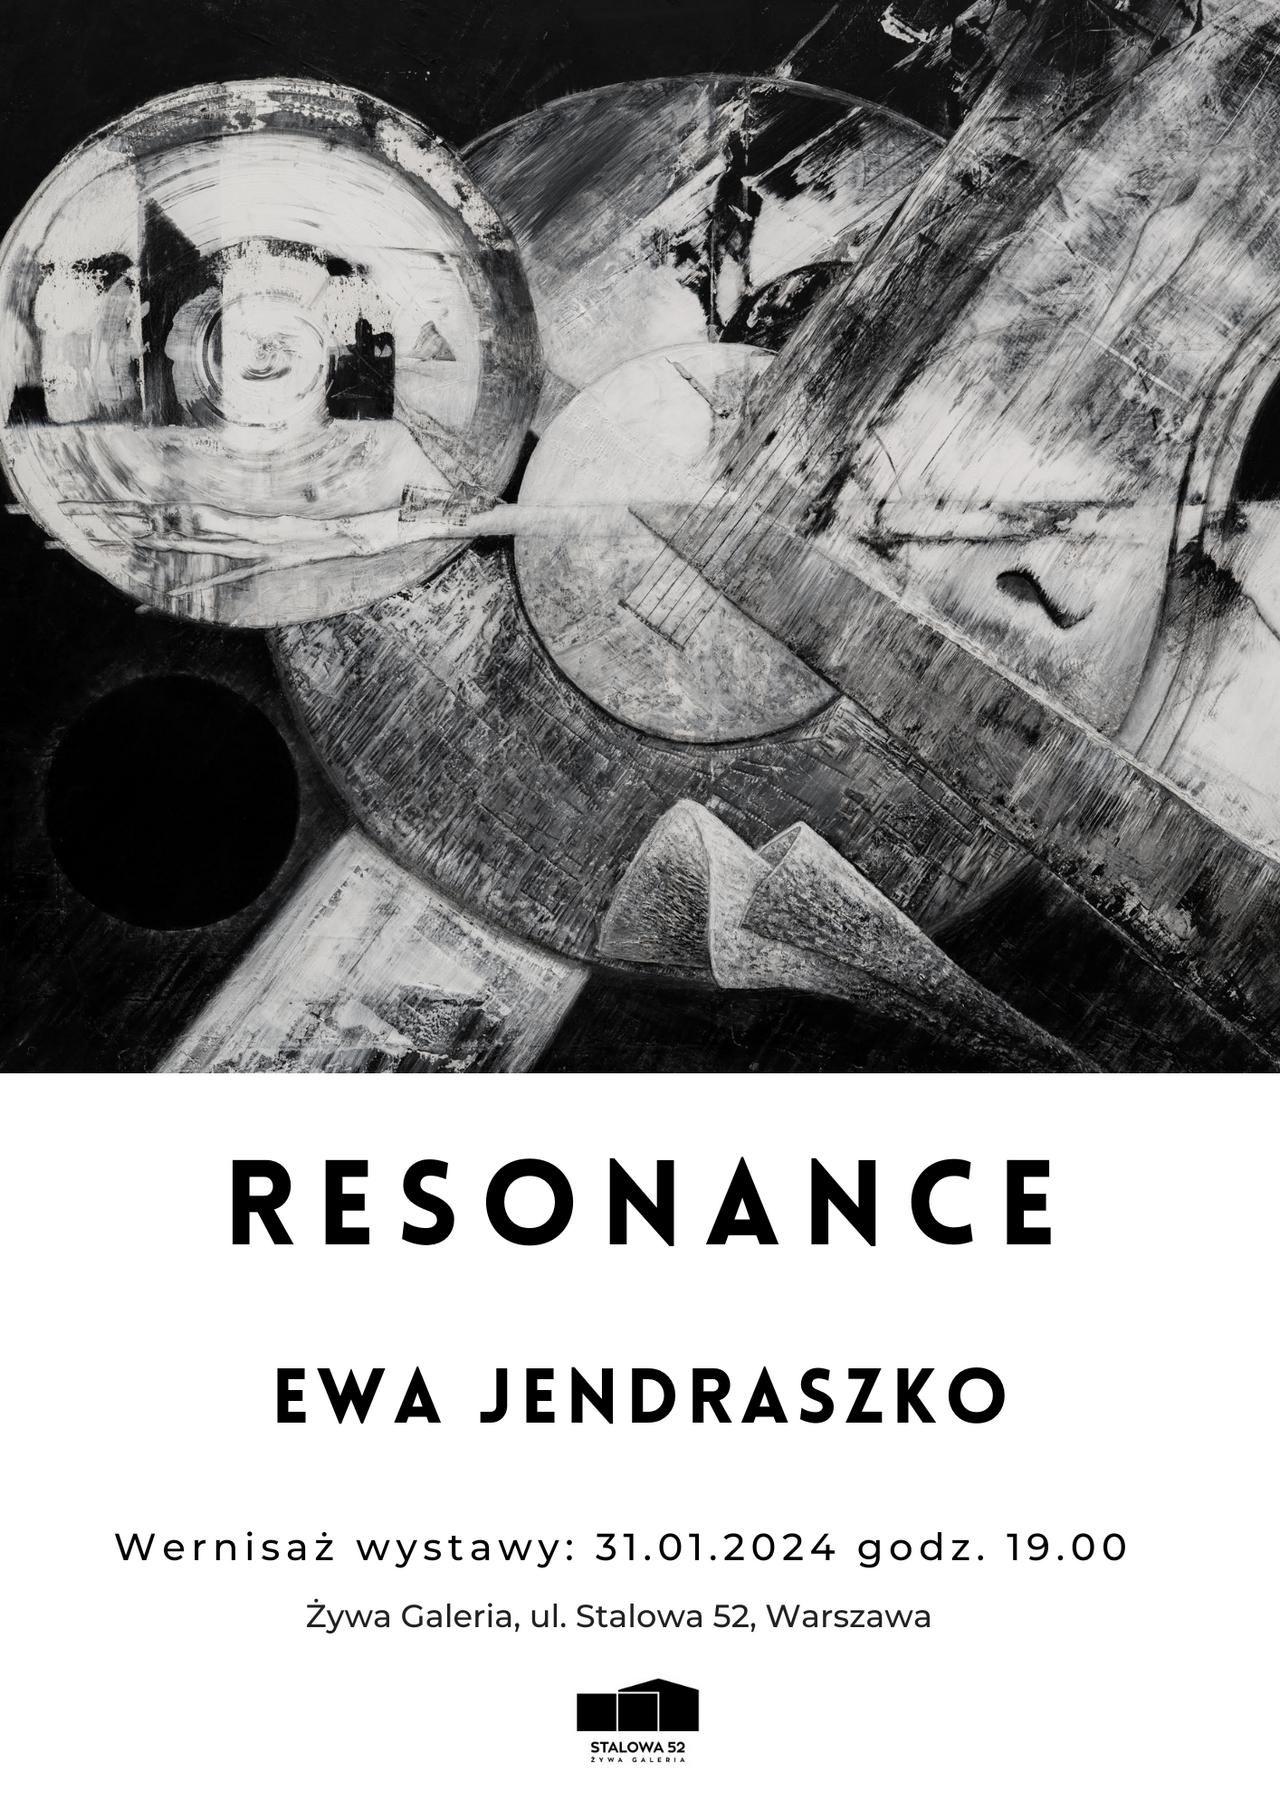 Wystawa pt. "RESONANCE" Ewy Jendraszko